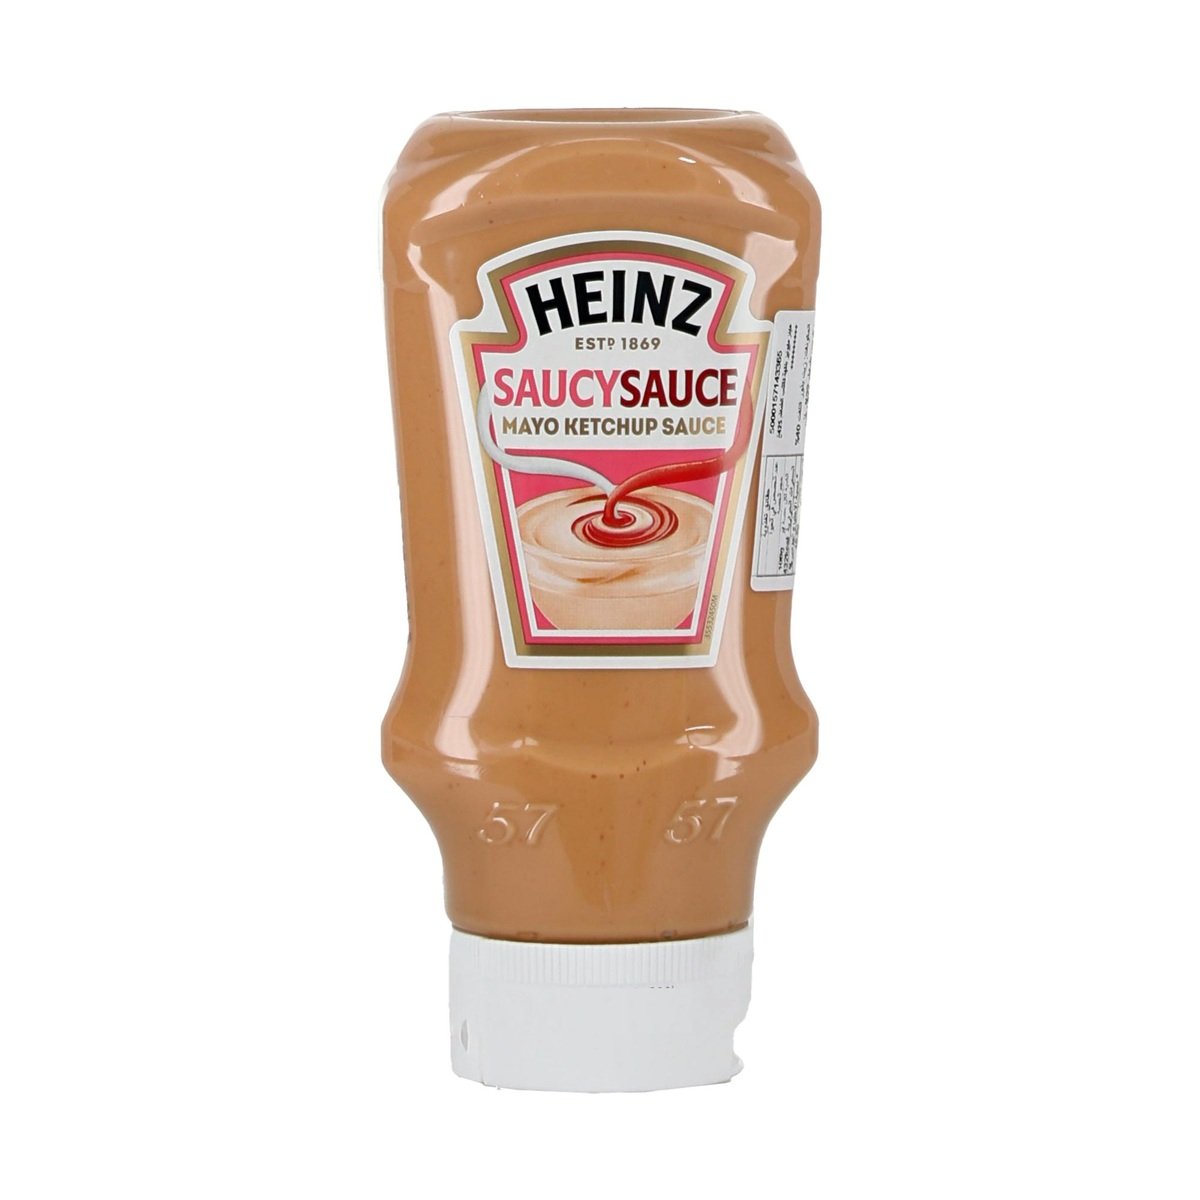 Heinz Saucy Sauce Mayo Ketchup Sauce 415 ml